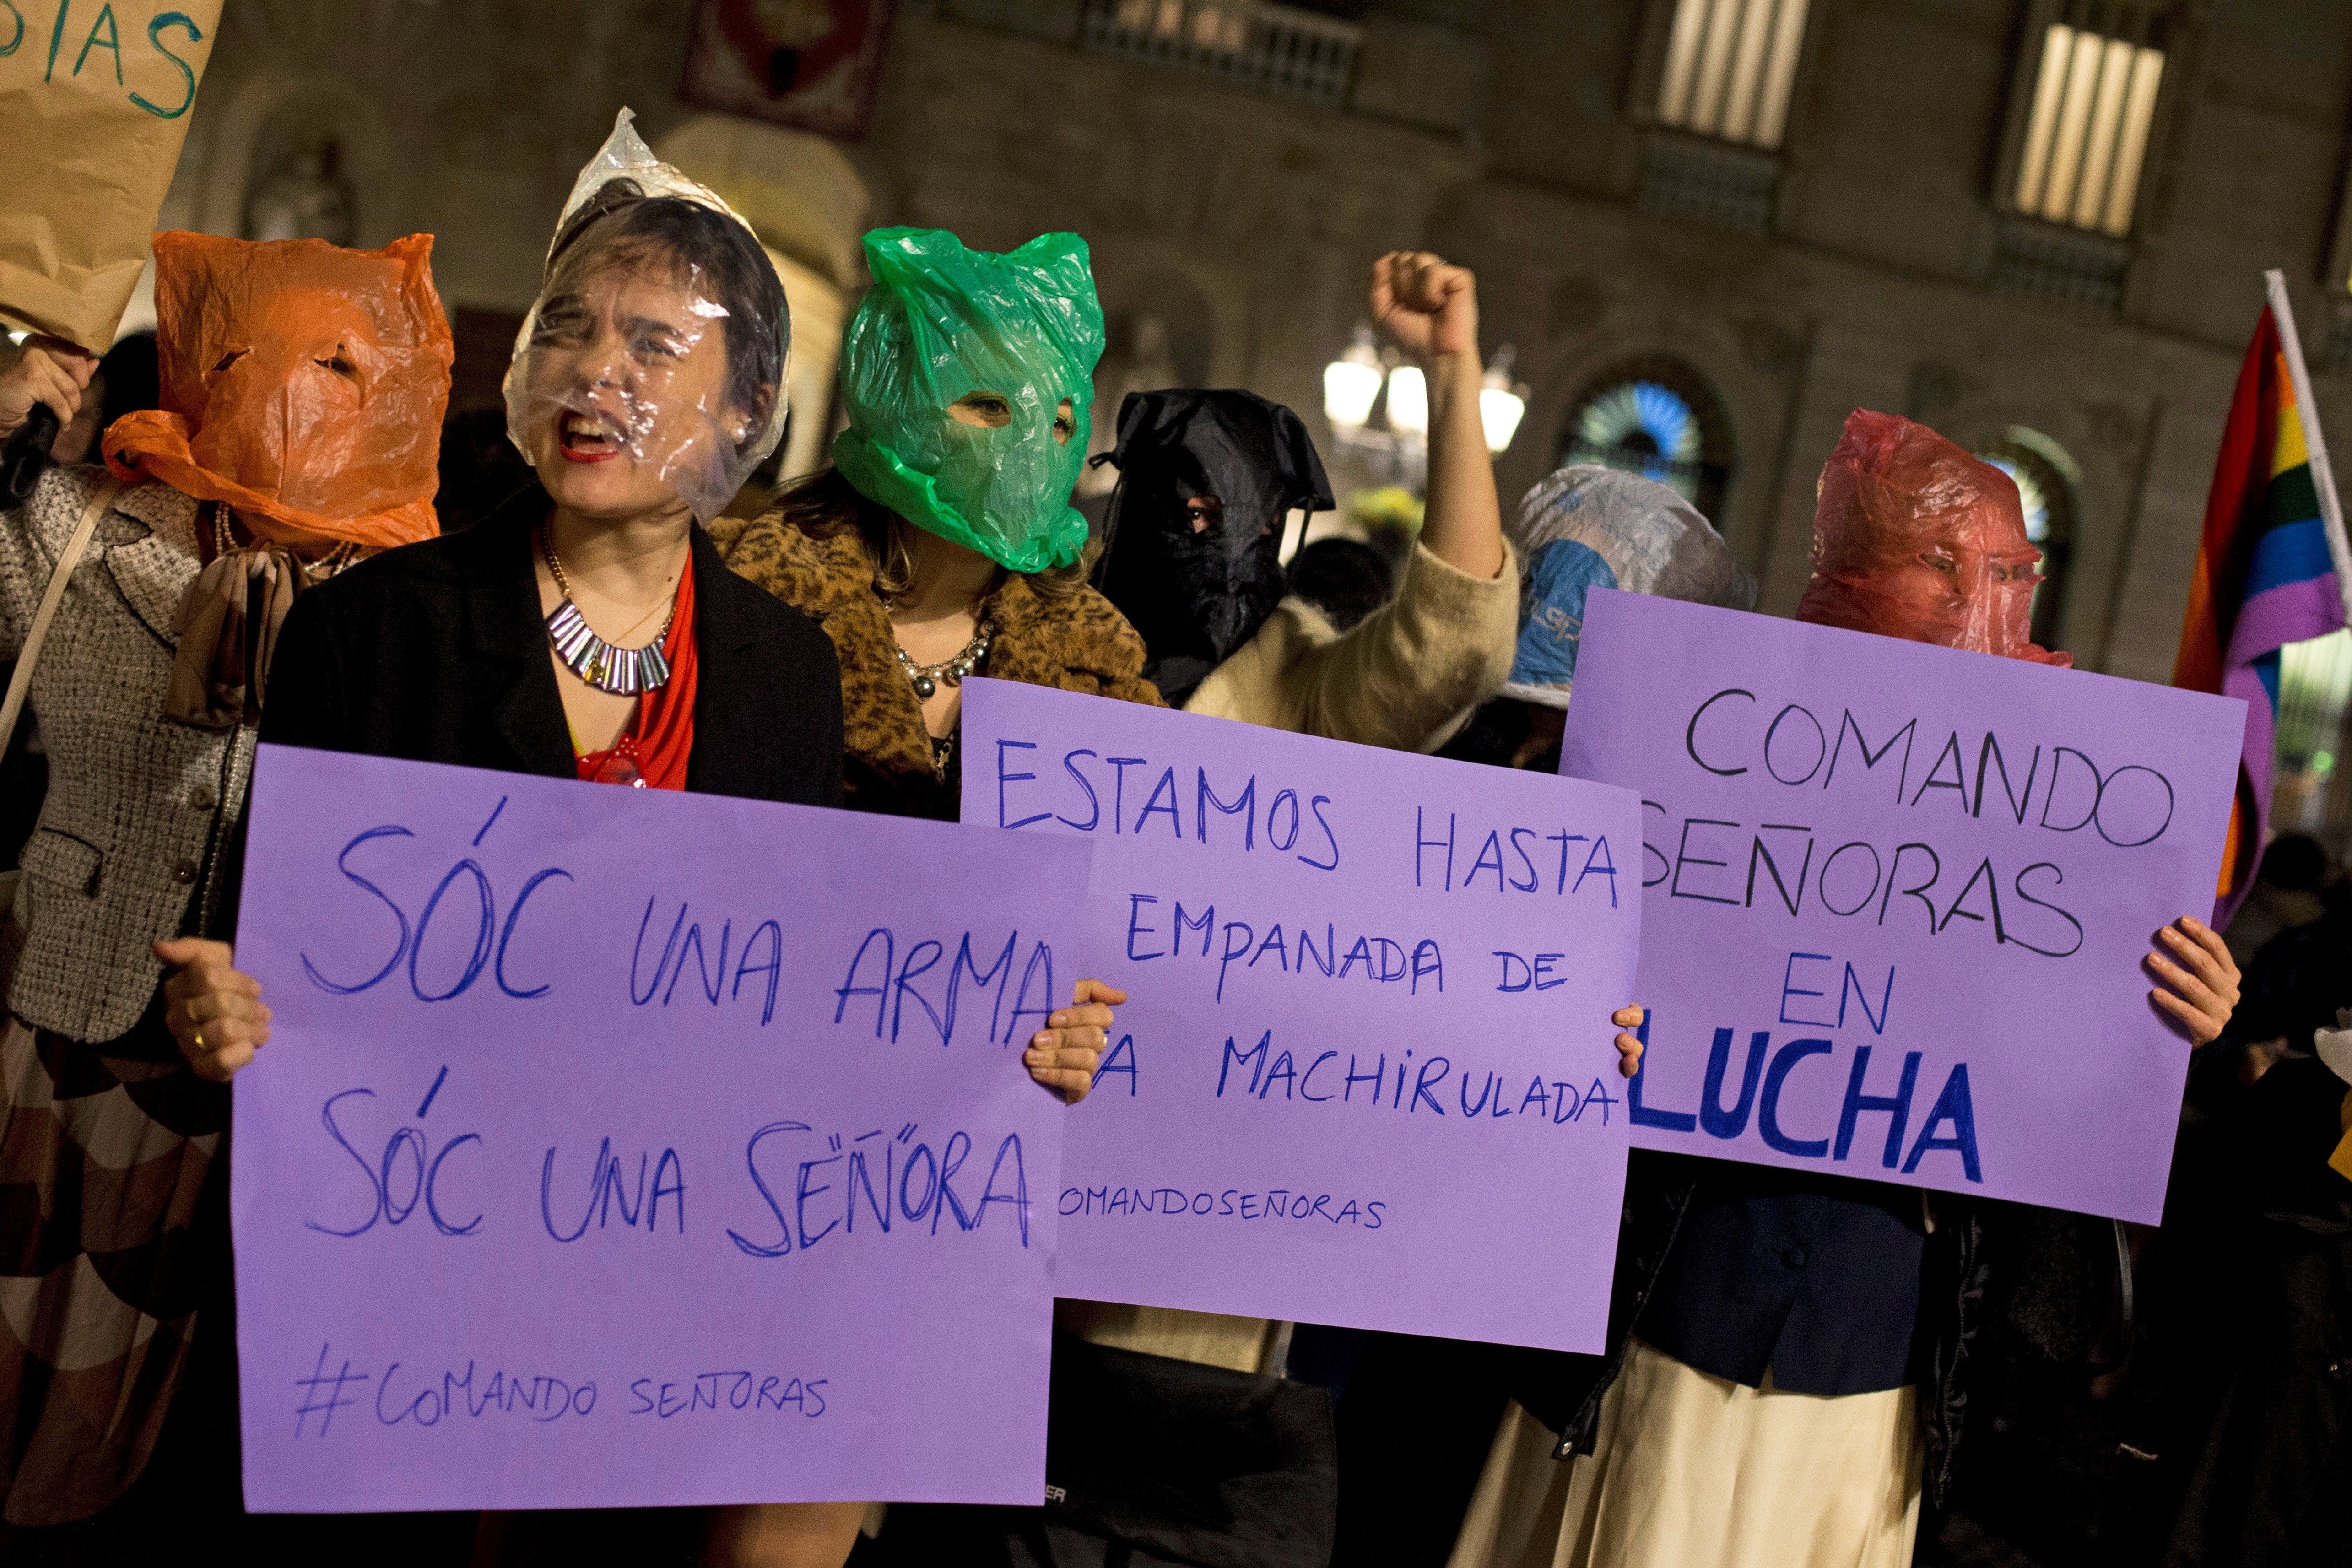 Concentració a plaça Sant Jaume en suport a les dones andaluses davant la irrupció de Vox